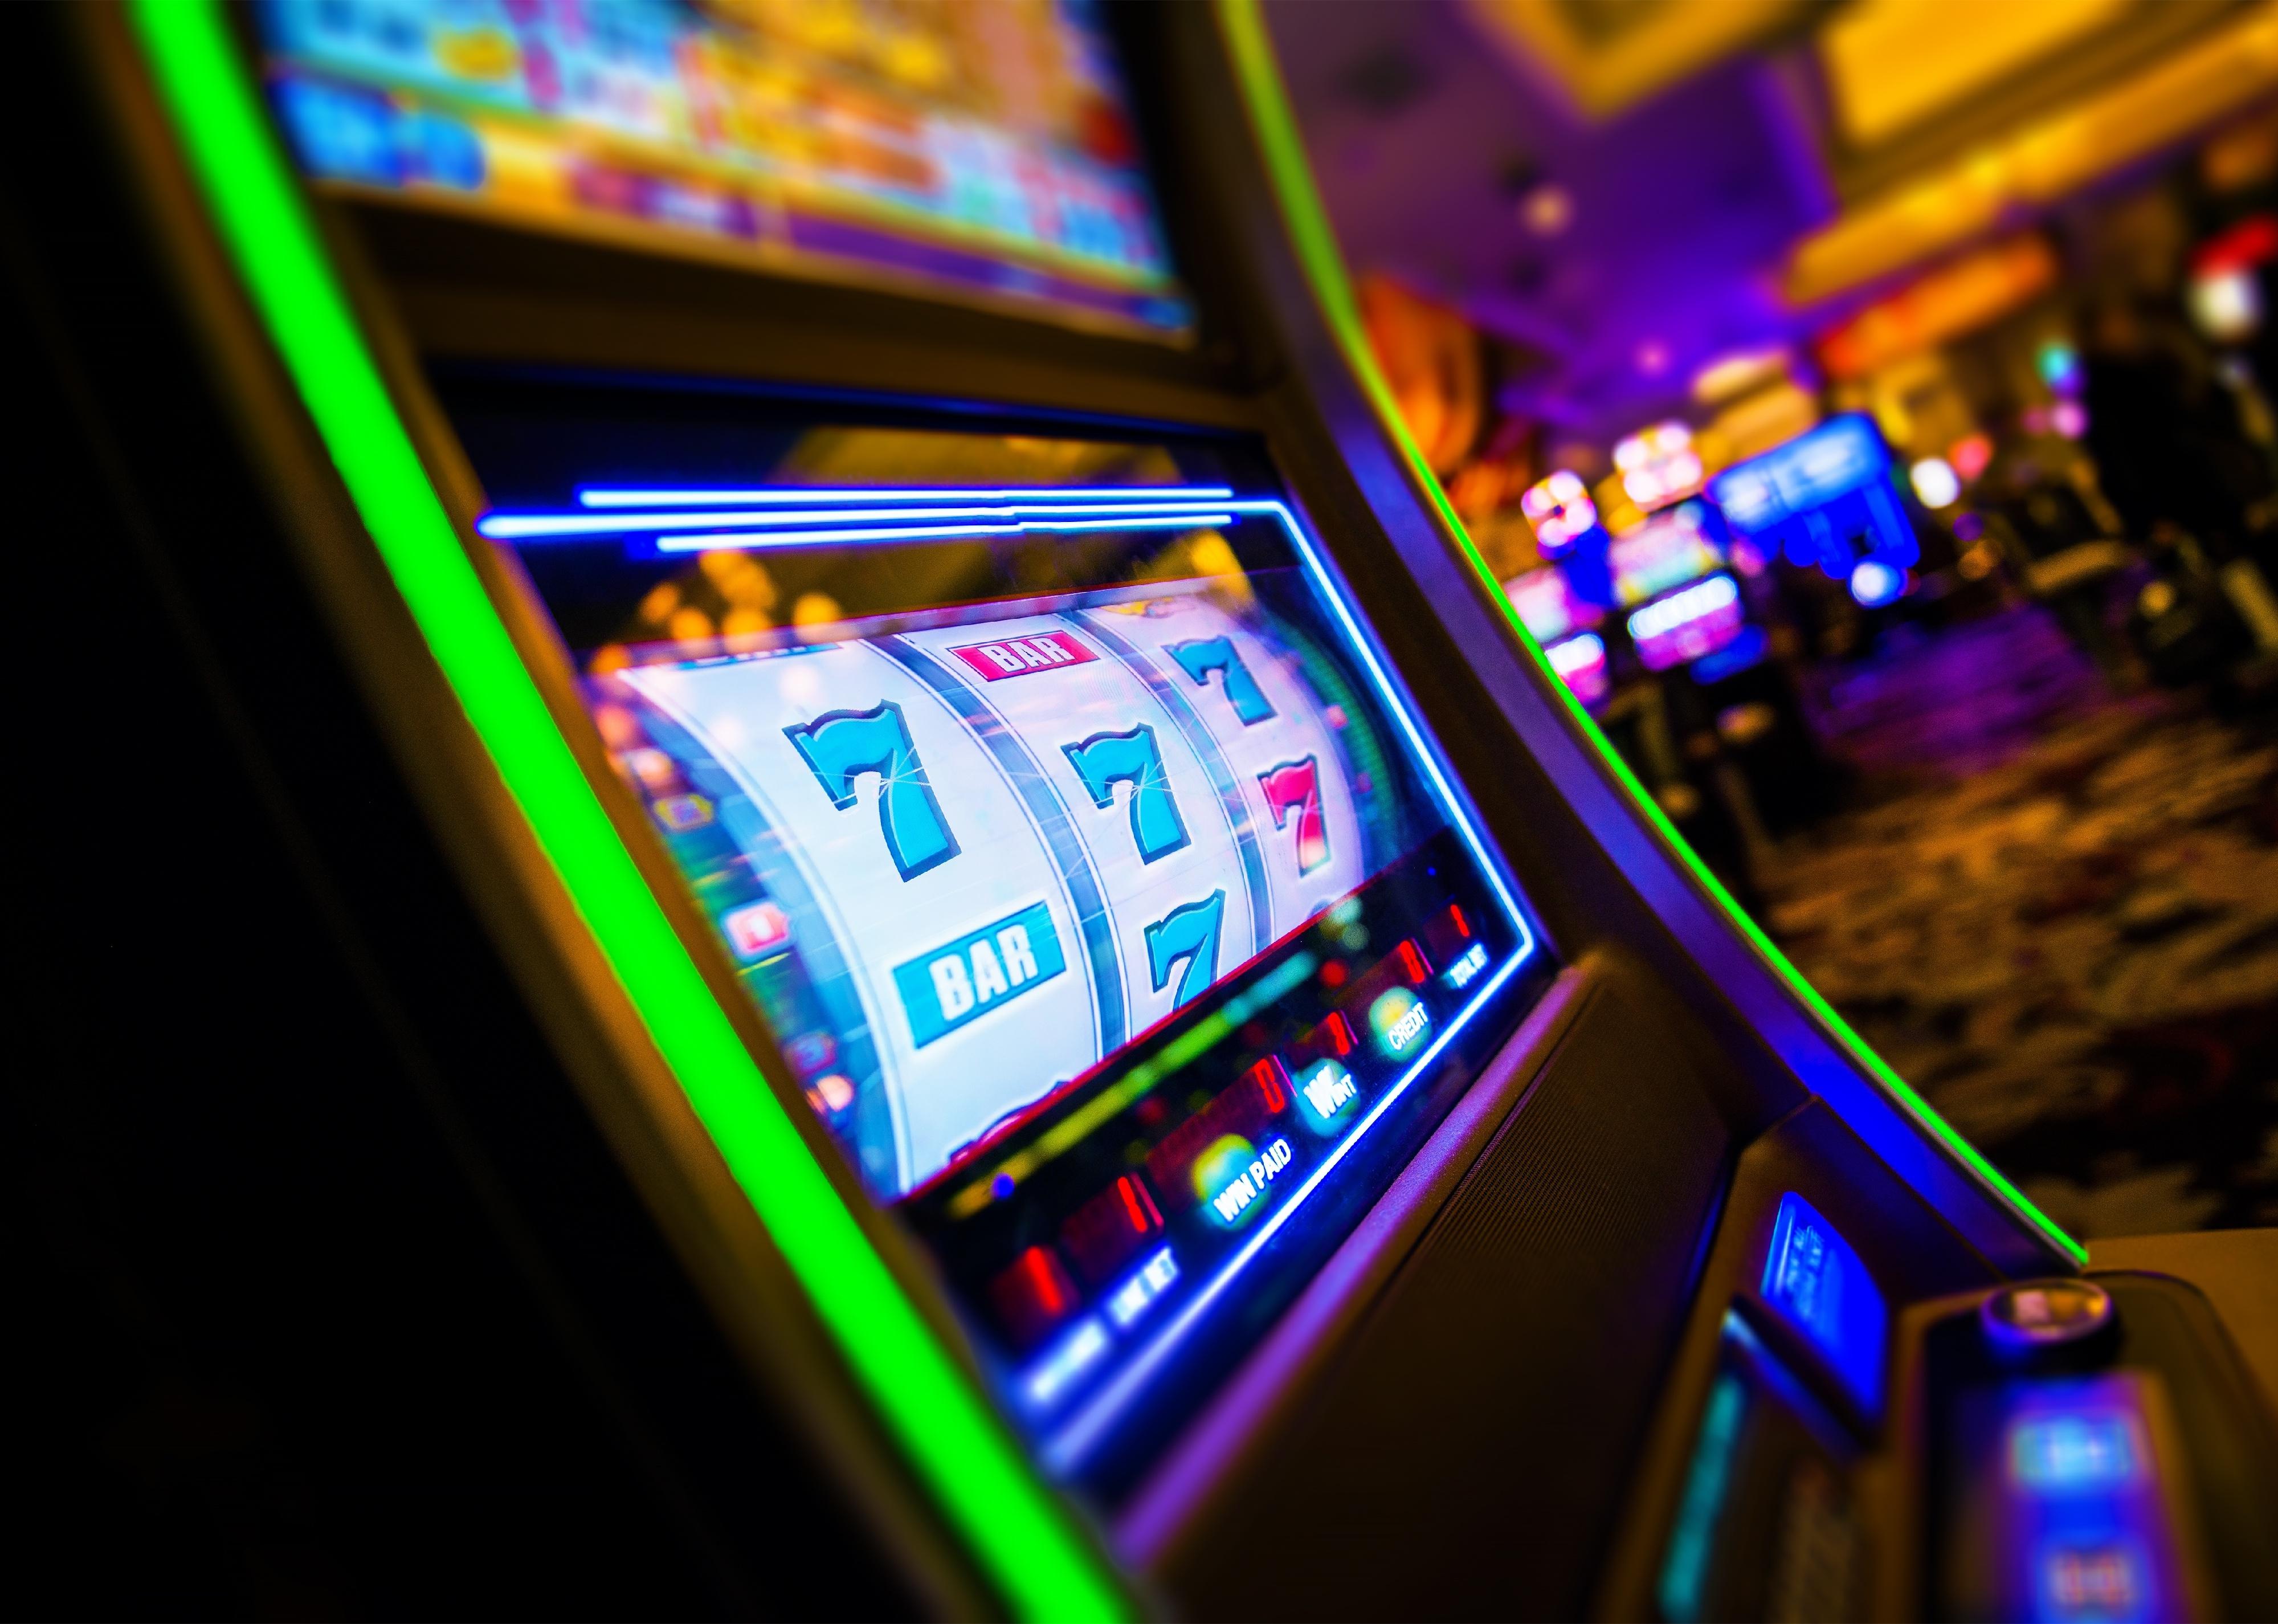 Side view of casino slot machine.